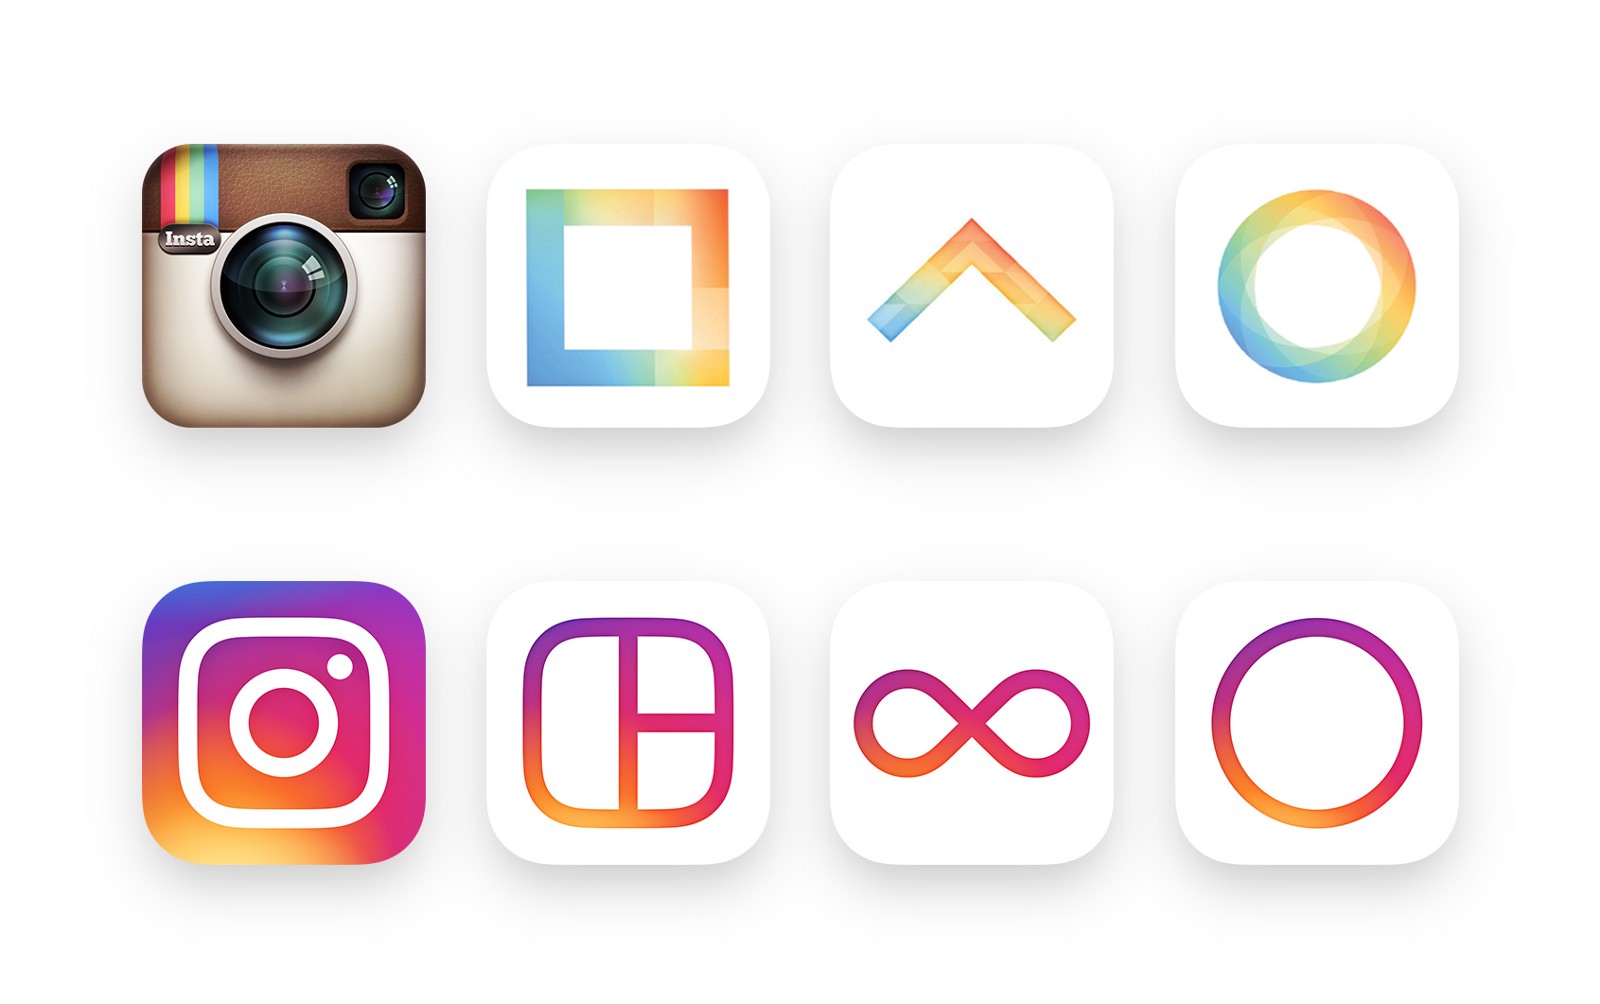 Нова іконка програми Instagram викликала багато критики, але цей редизайн, безсумнівно, освіжив бренд: